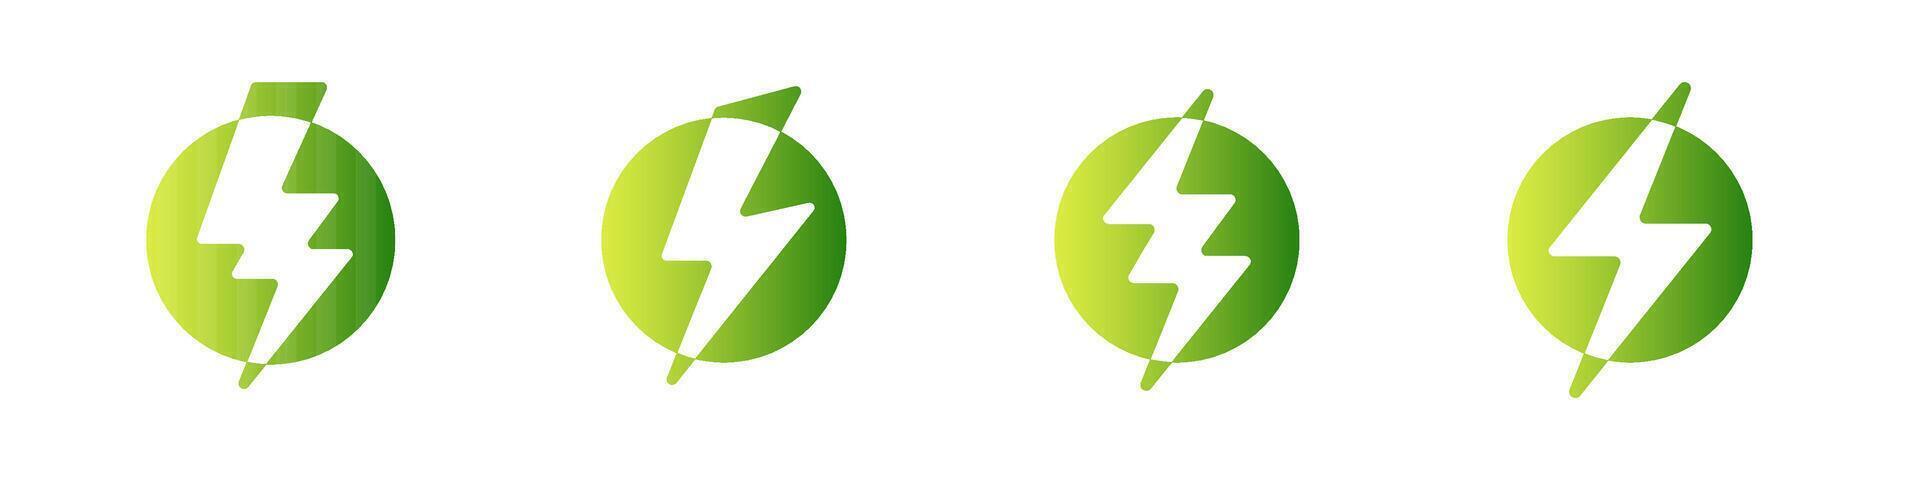 verde eco energía logo trueno energía y destello tornillo icono vector